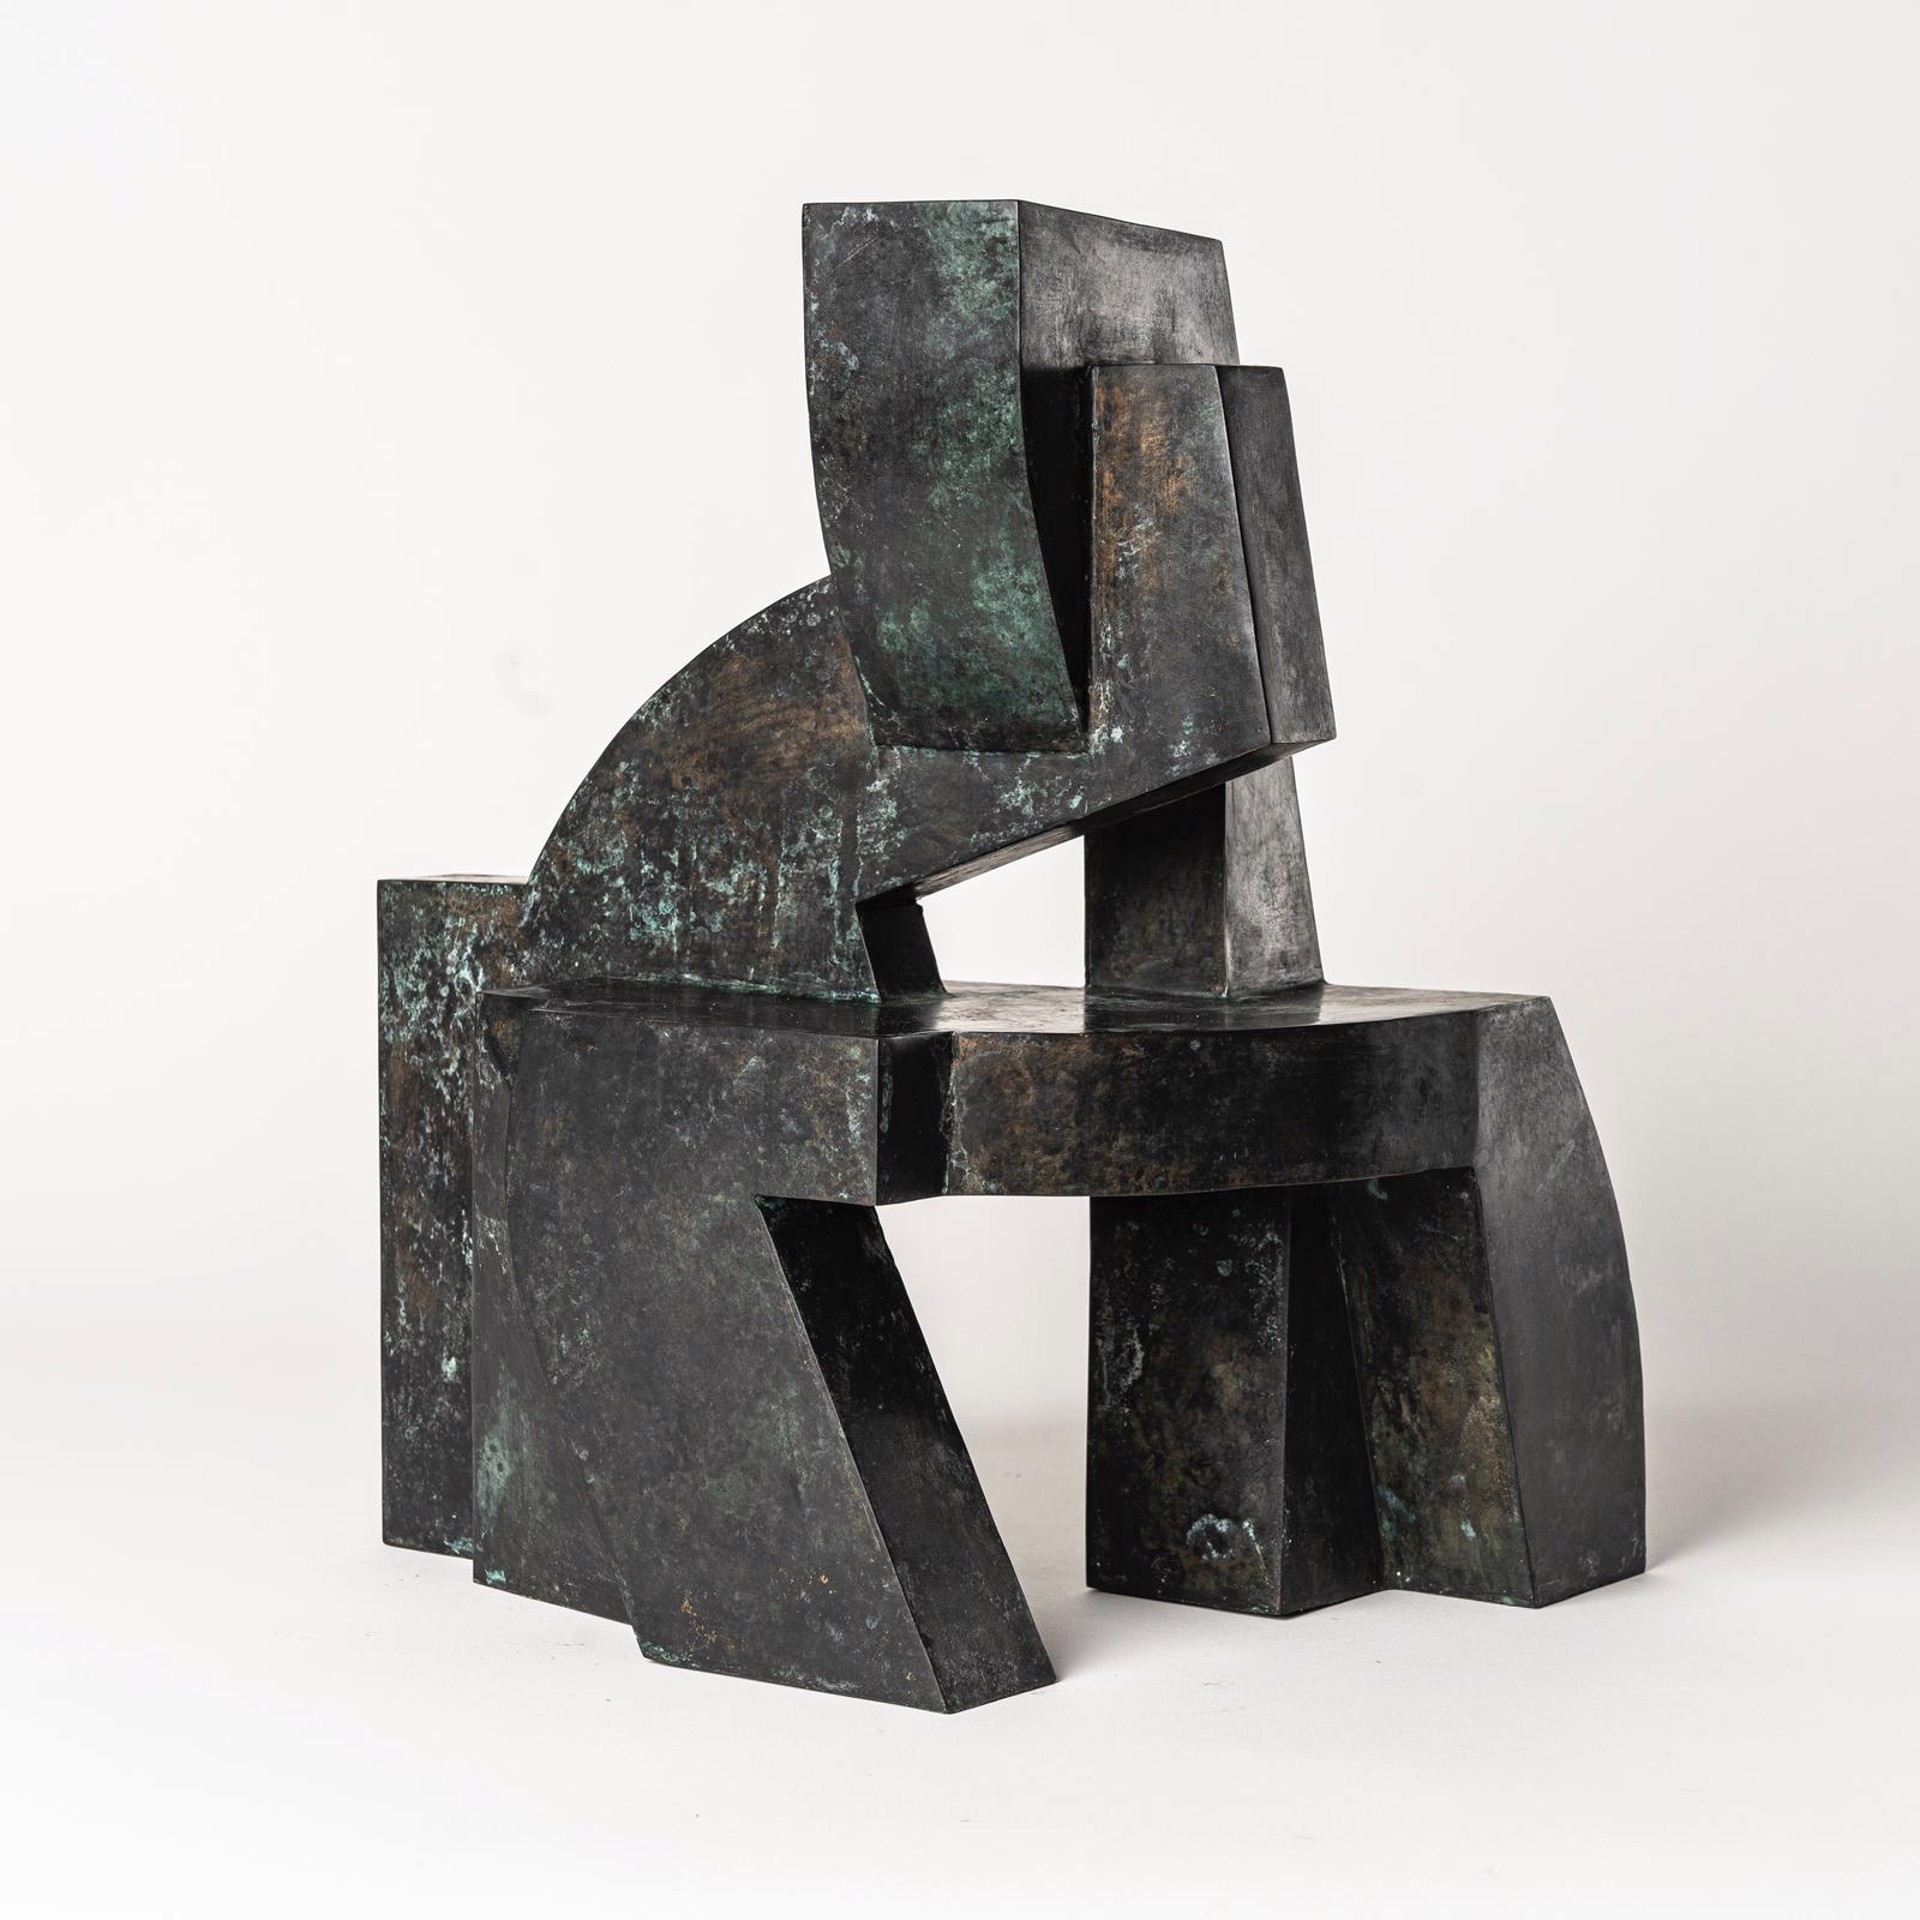 Volume in Bronze II by Adrian Fernandez